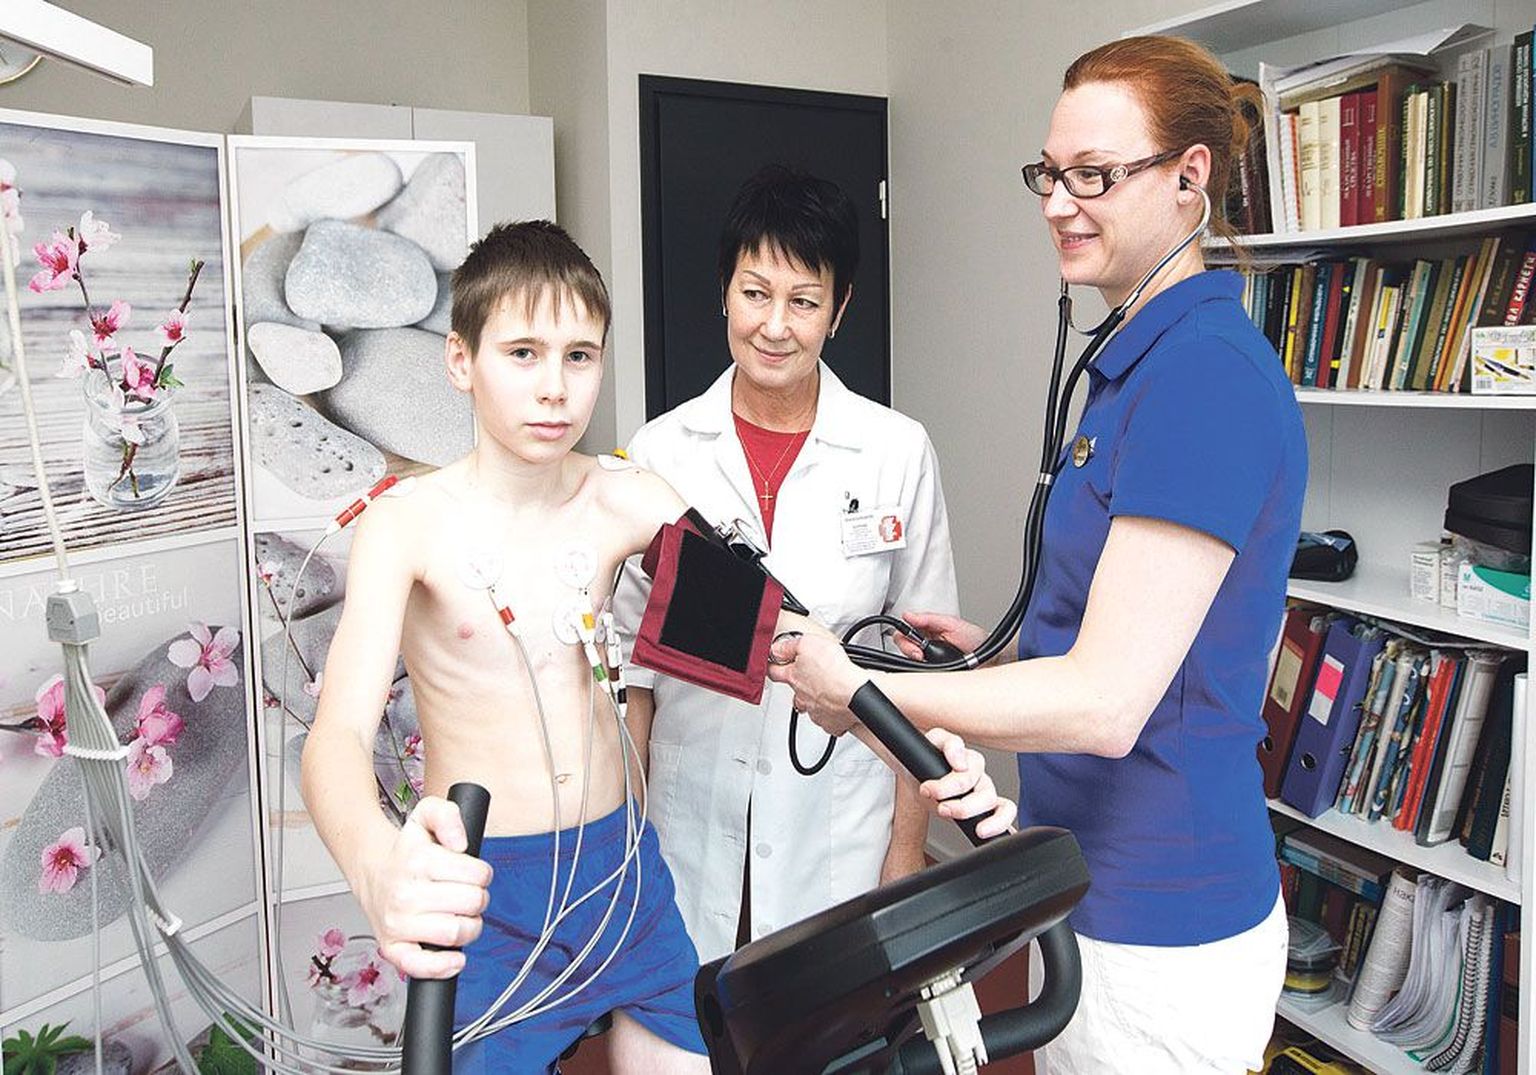 Спортивный врач Ирина Предко и физиотерапевт Алена Сяйлев из Tervise Centrum проверяют здоровье юных спортсменов. Фото иллюстративное.